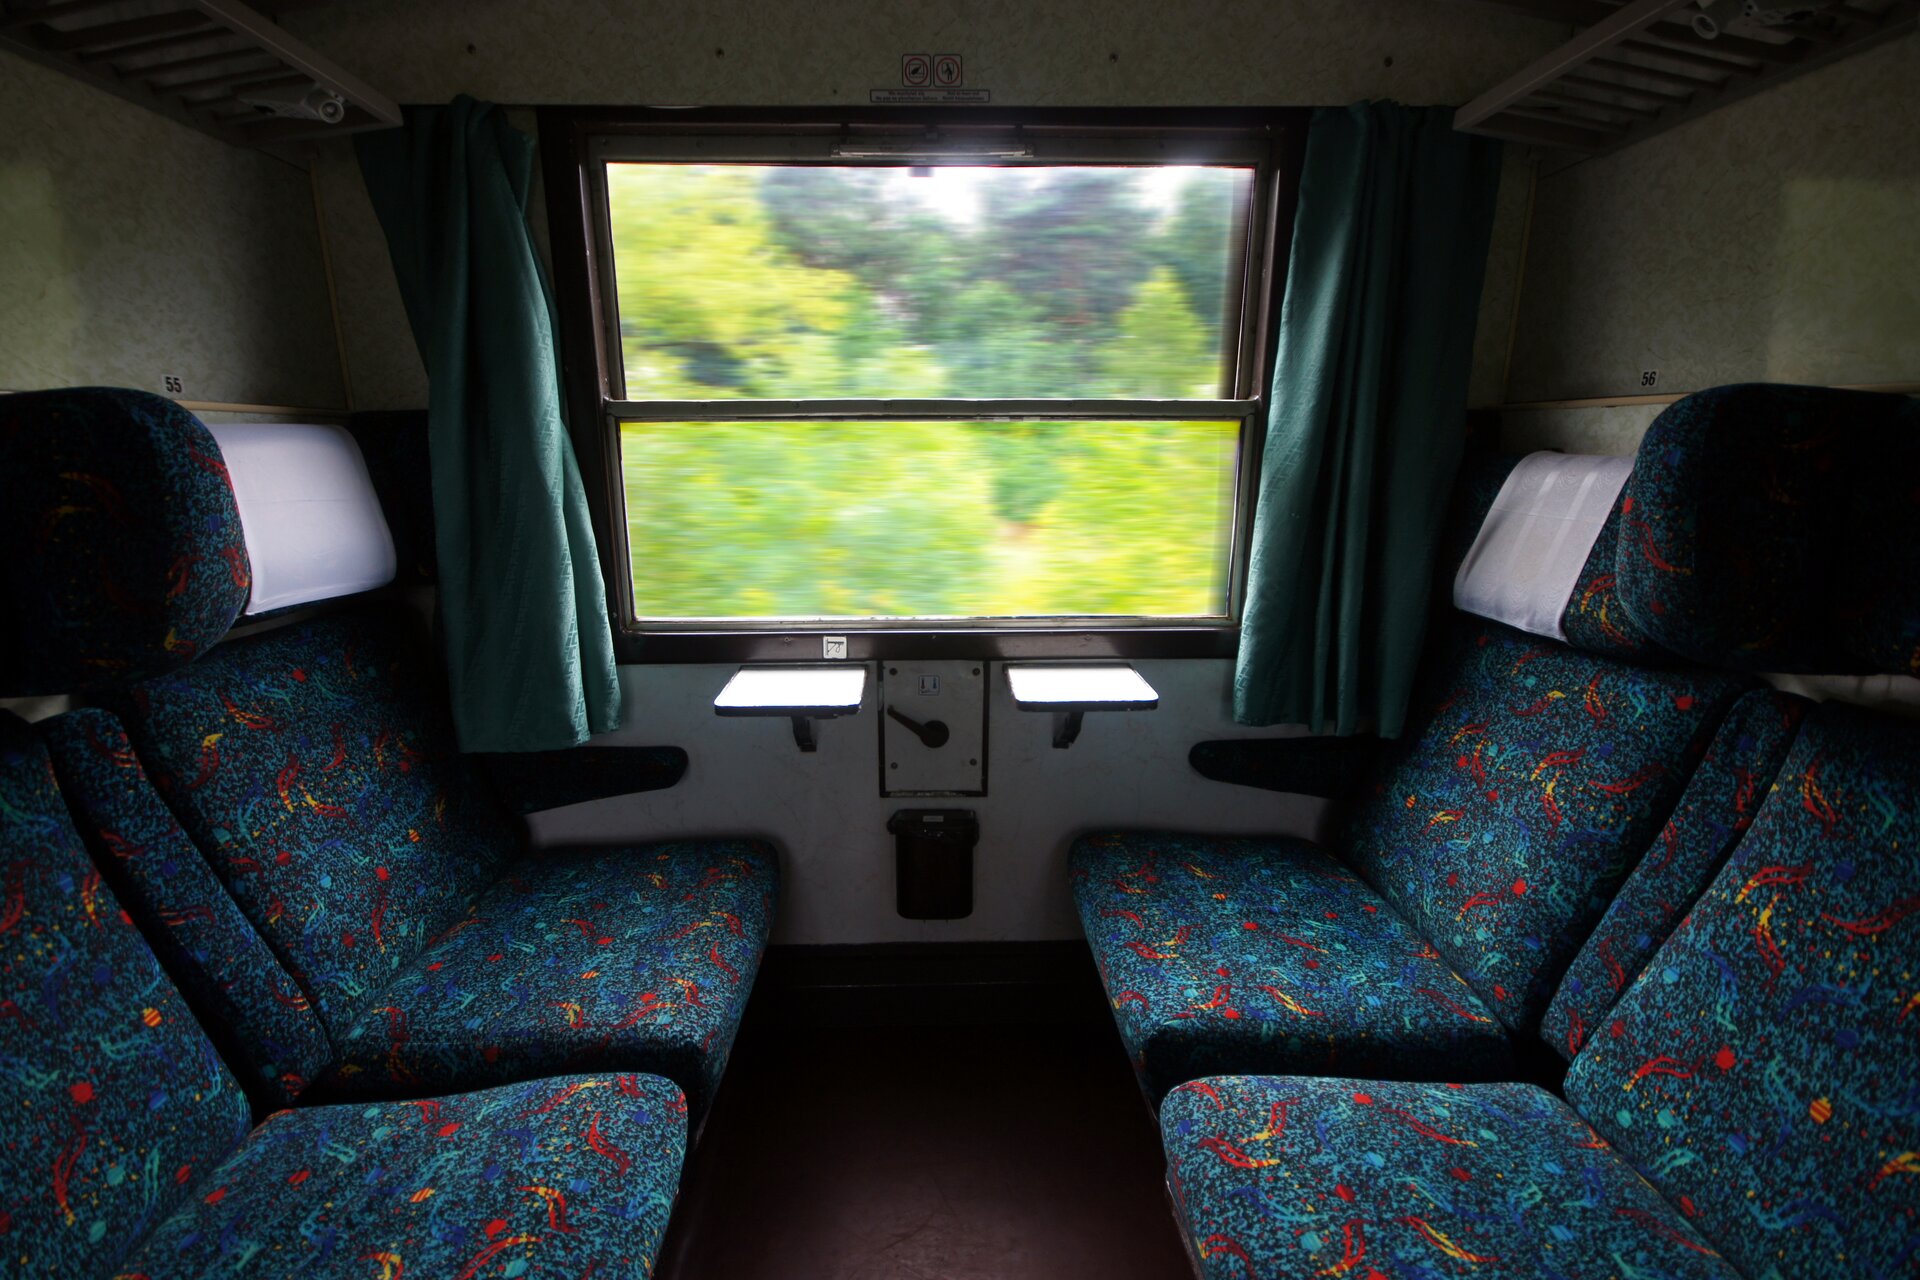 Zdjęcie przedstawia wnętrze przedziału w pociągu. Po lewej i po prawej krzesła obite wielokolorowym materiałem. Na wprost okno. Za oknem widać rozmazane kontury zielonych drzew.